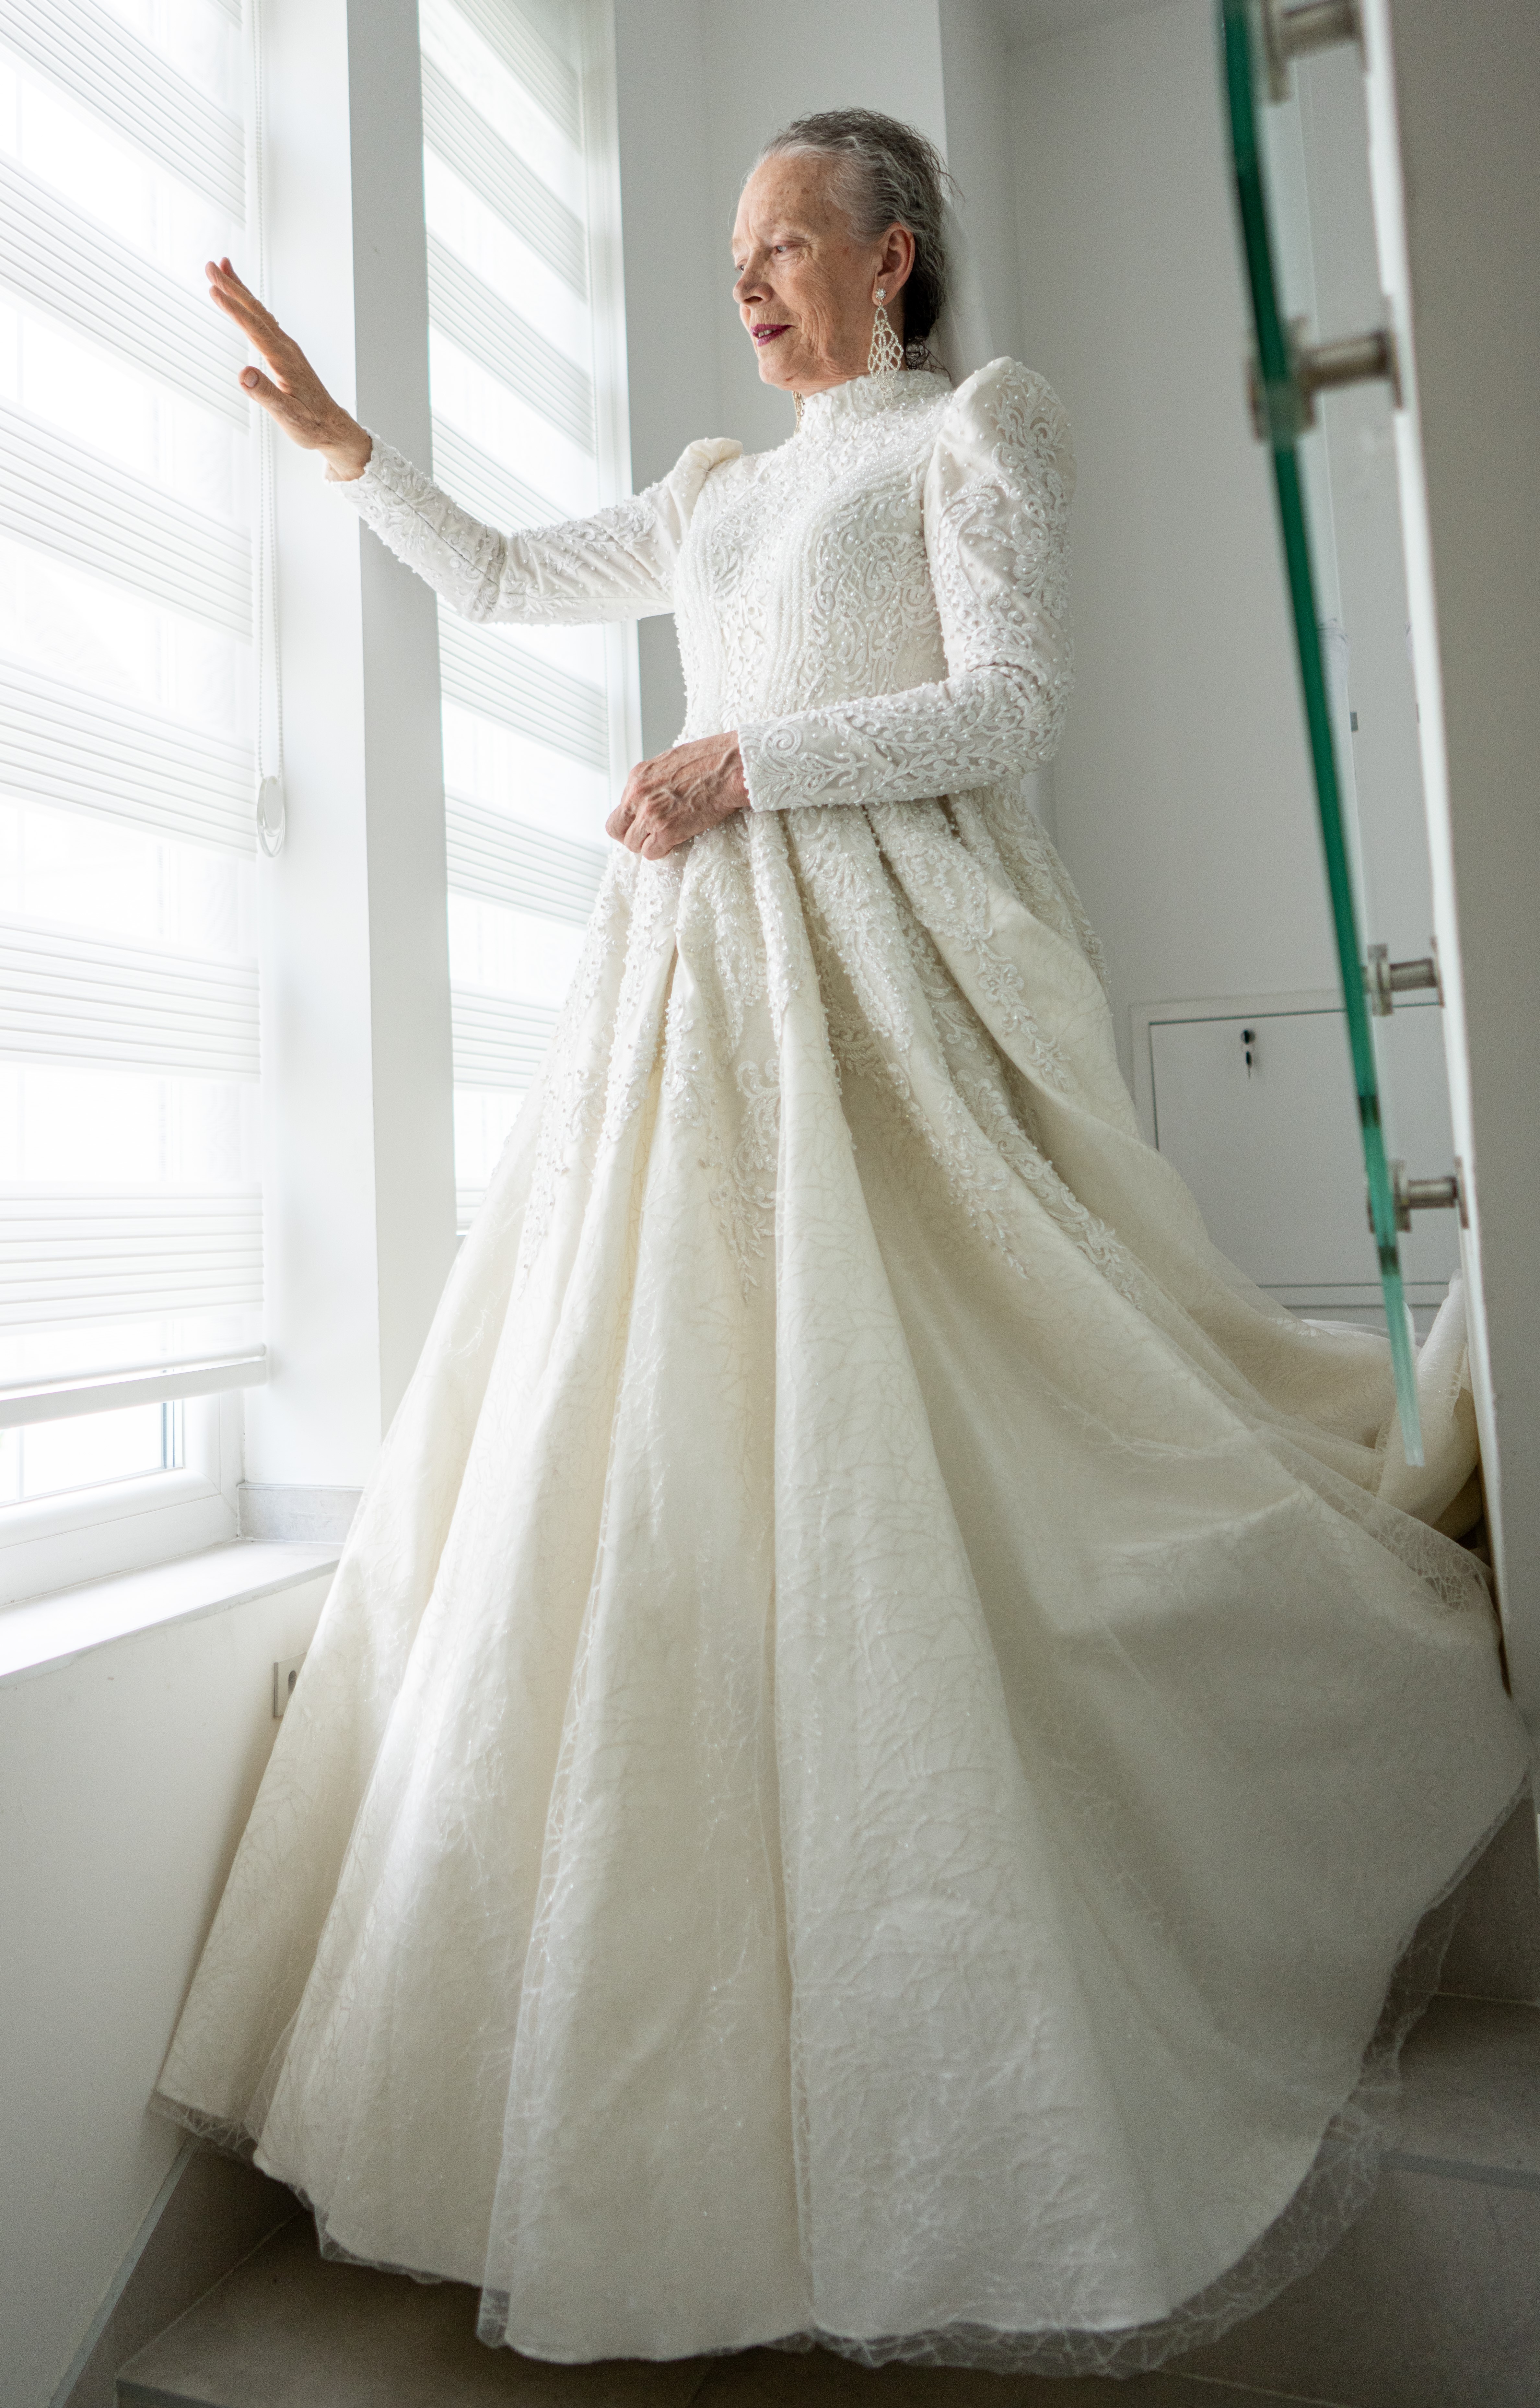 Schwiegermutter im Hochzeitskleid | Quelle: Getty Images